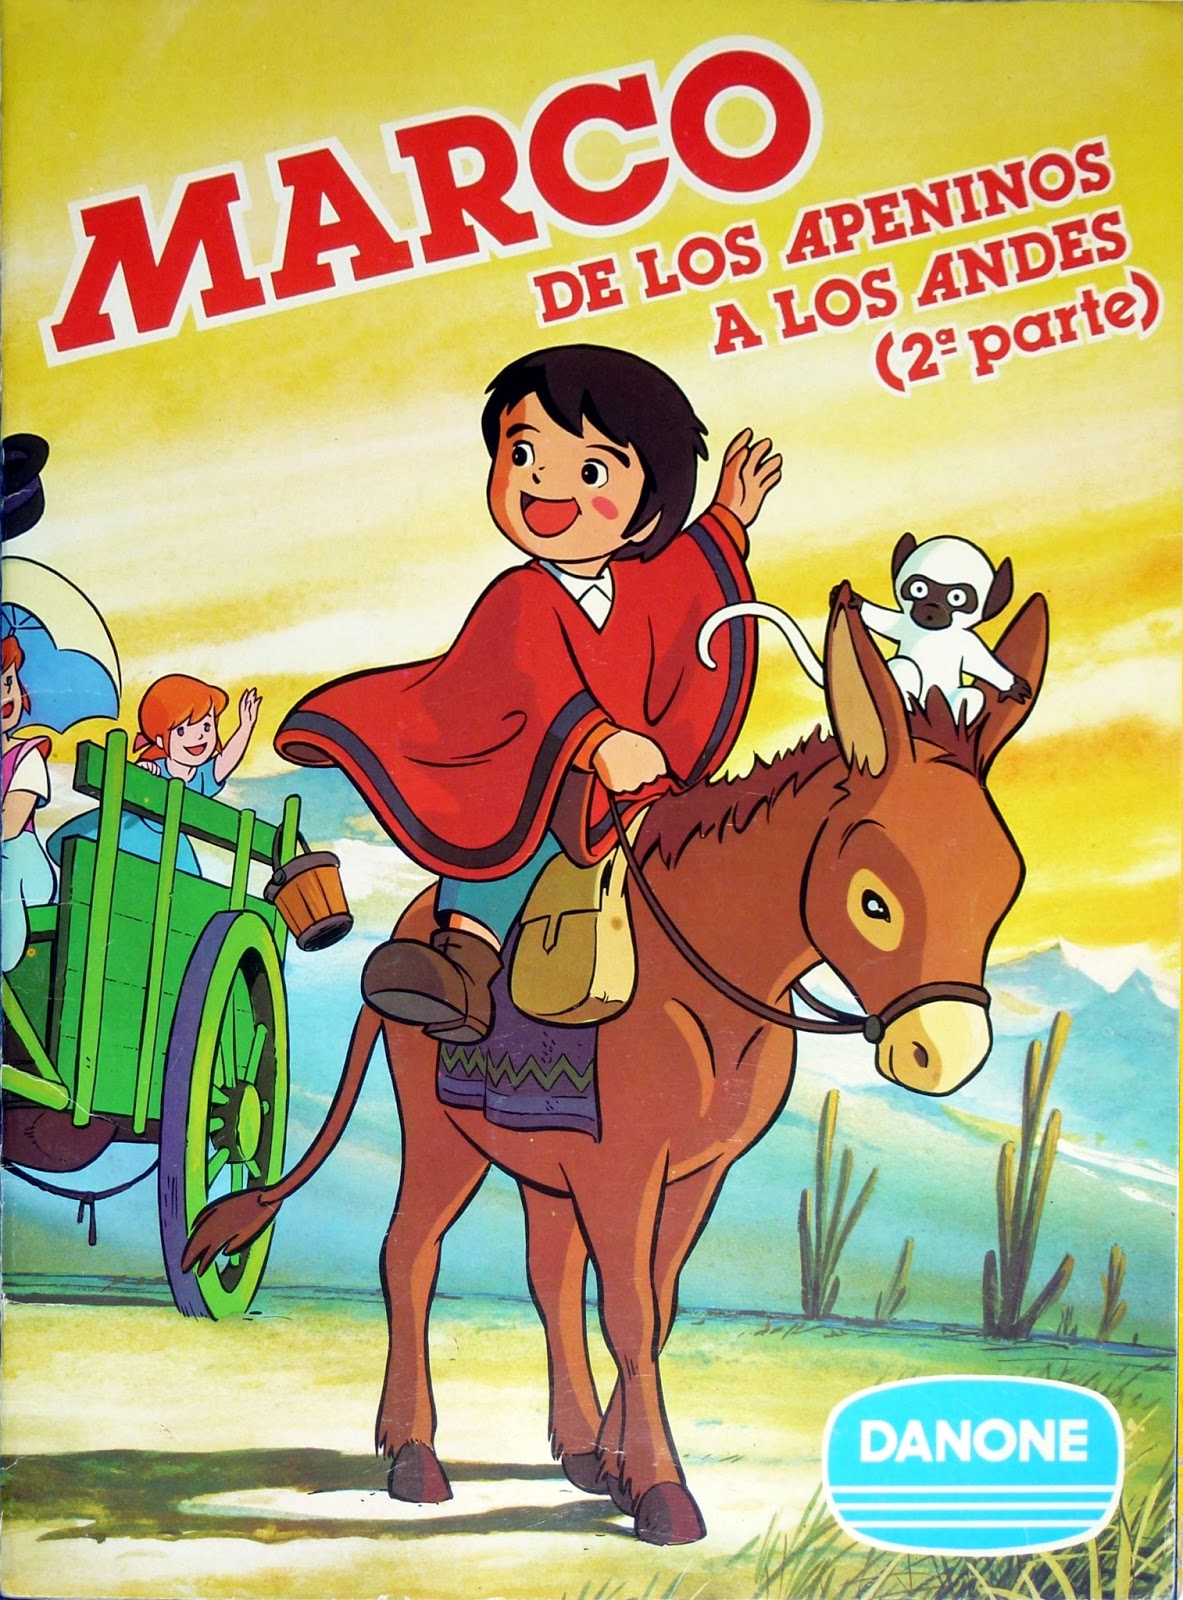 ALBUM DE CROMOS de DANONE AÑOS 80 –  MARCO DE LOS APENINOS A LOS ANDES 2.